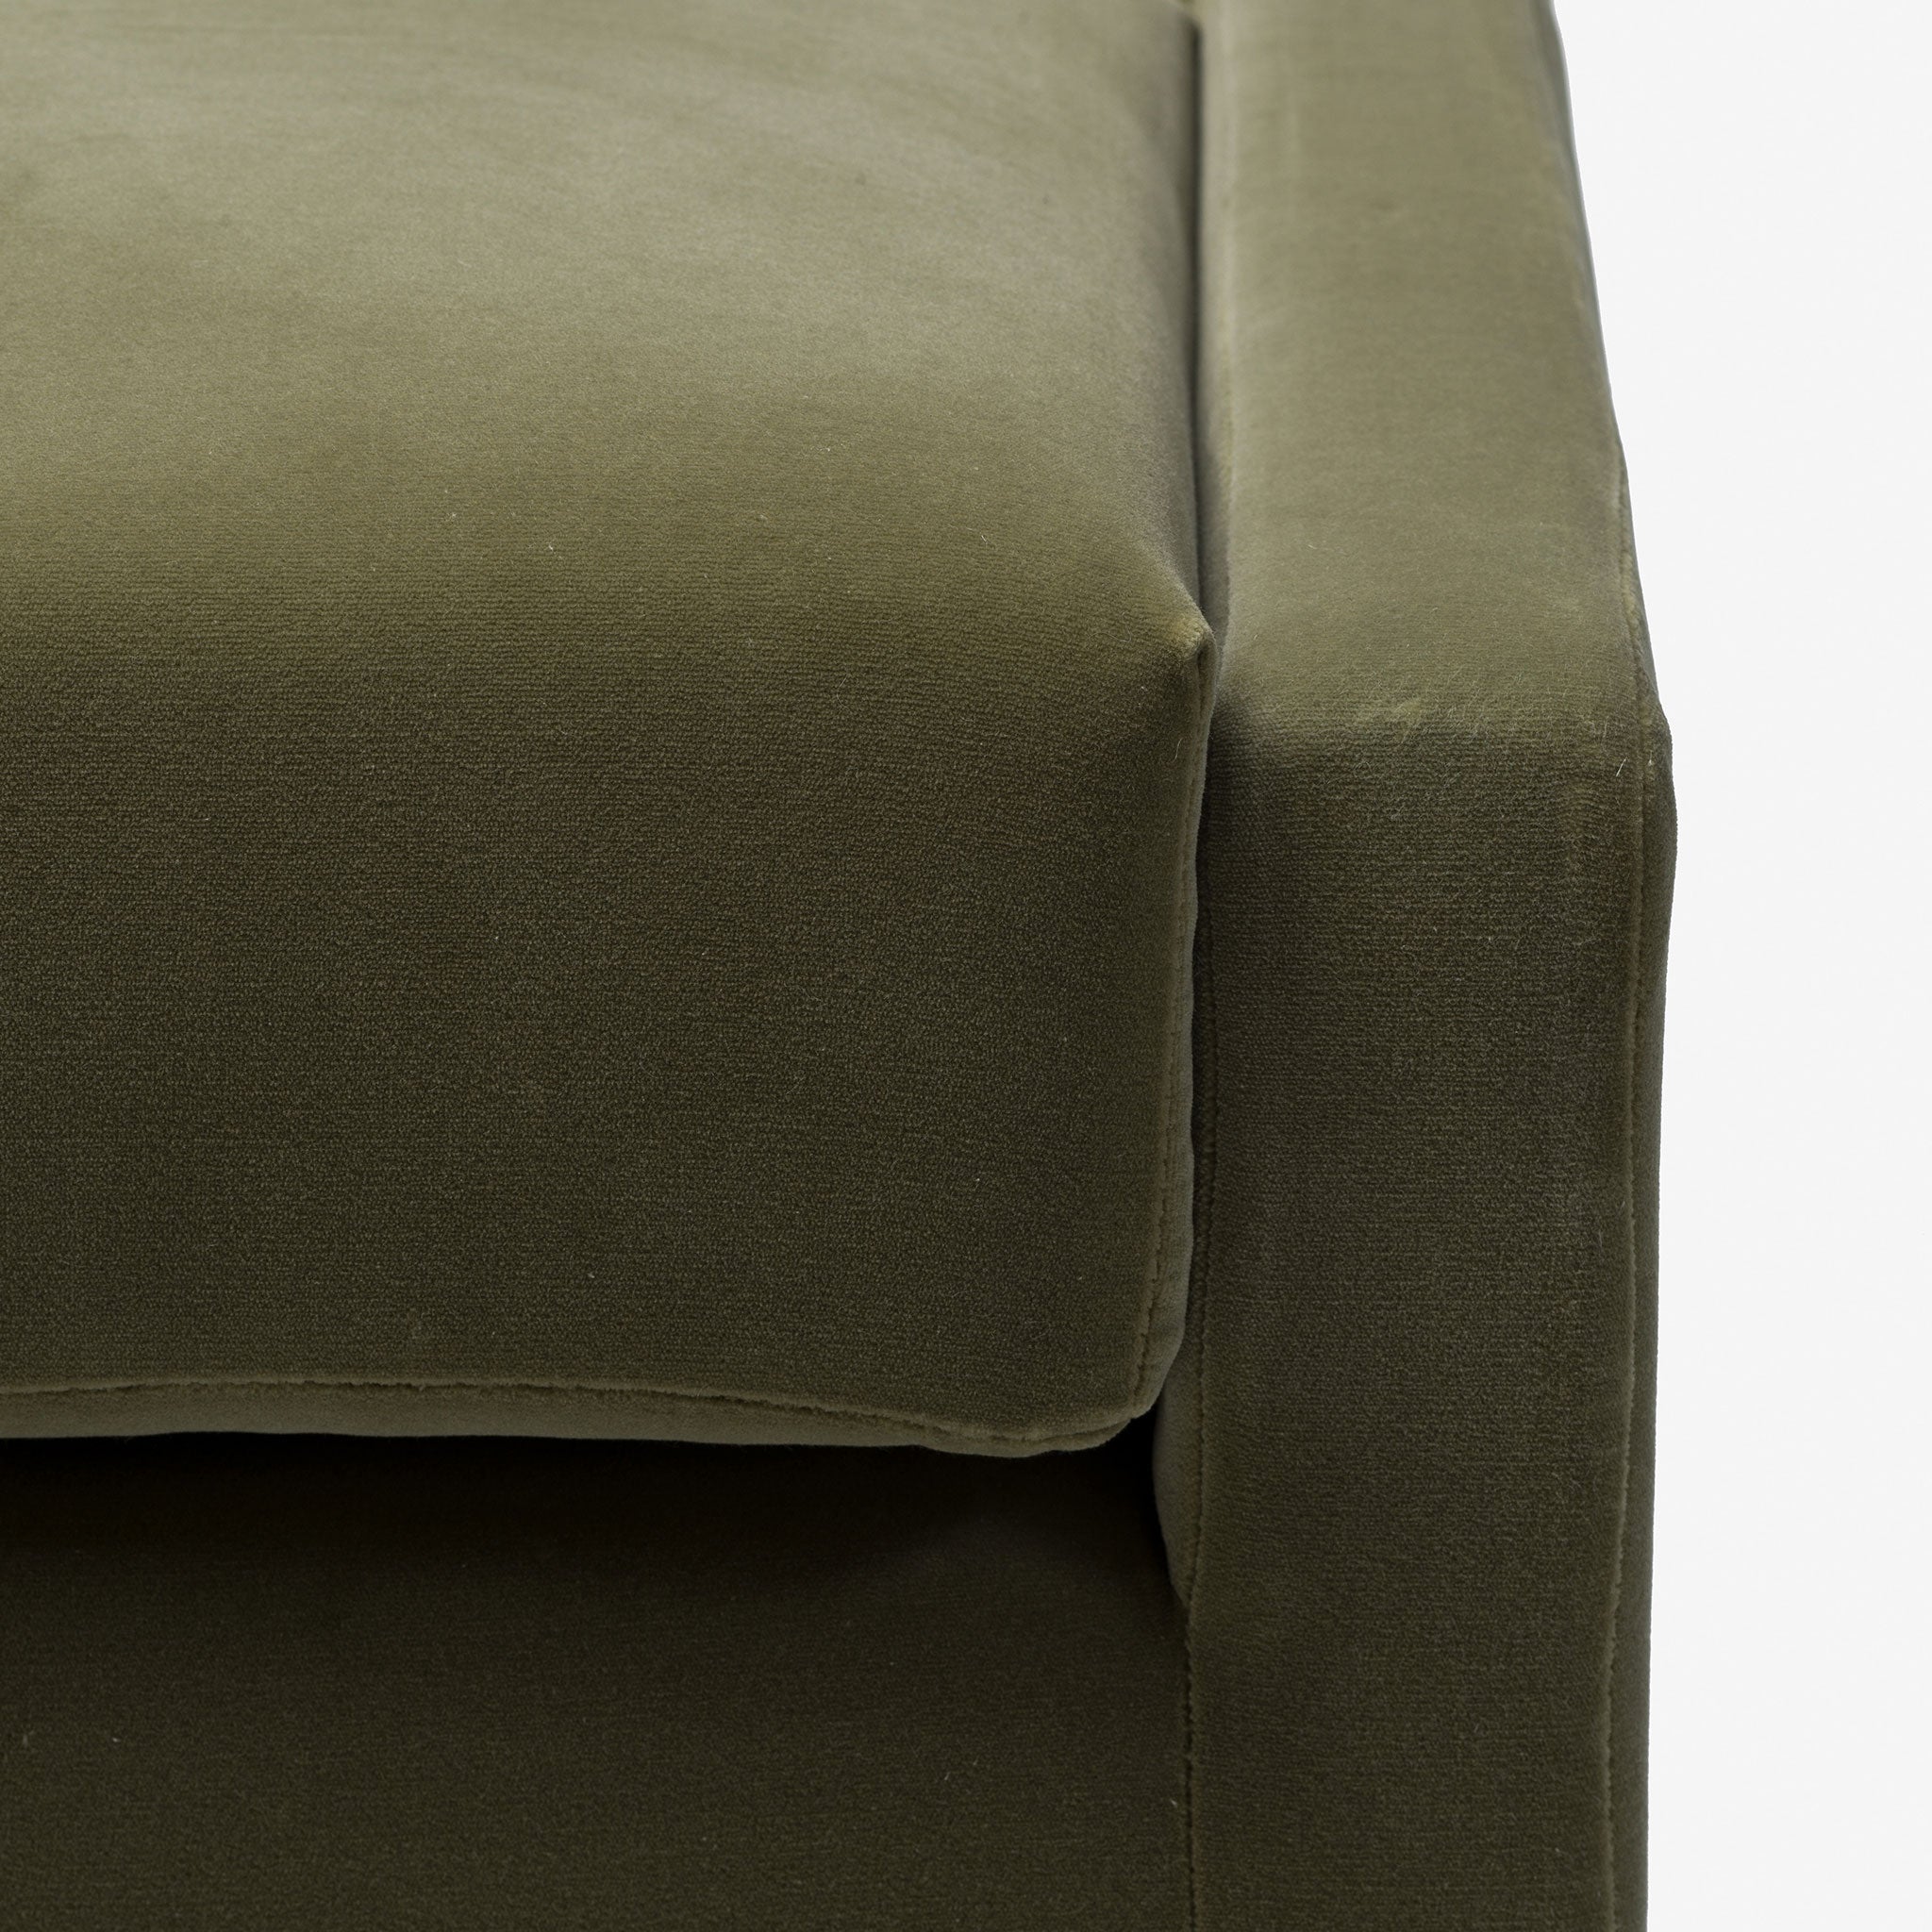 Luxury furniture, Velvet Bench, Backrest, Contemporary Design, Modern Design, Living Room, Bedroom